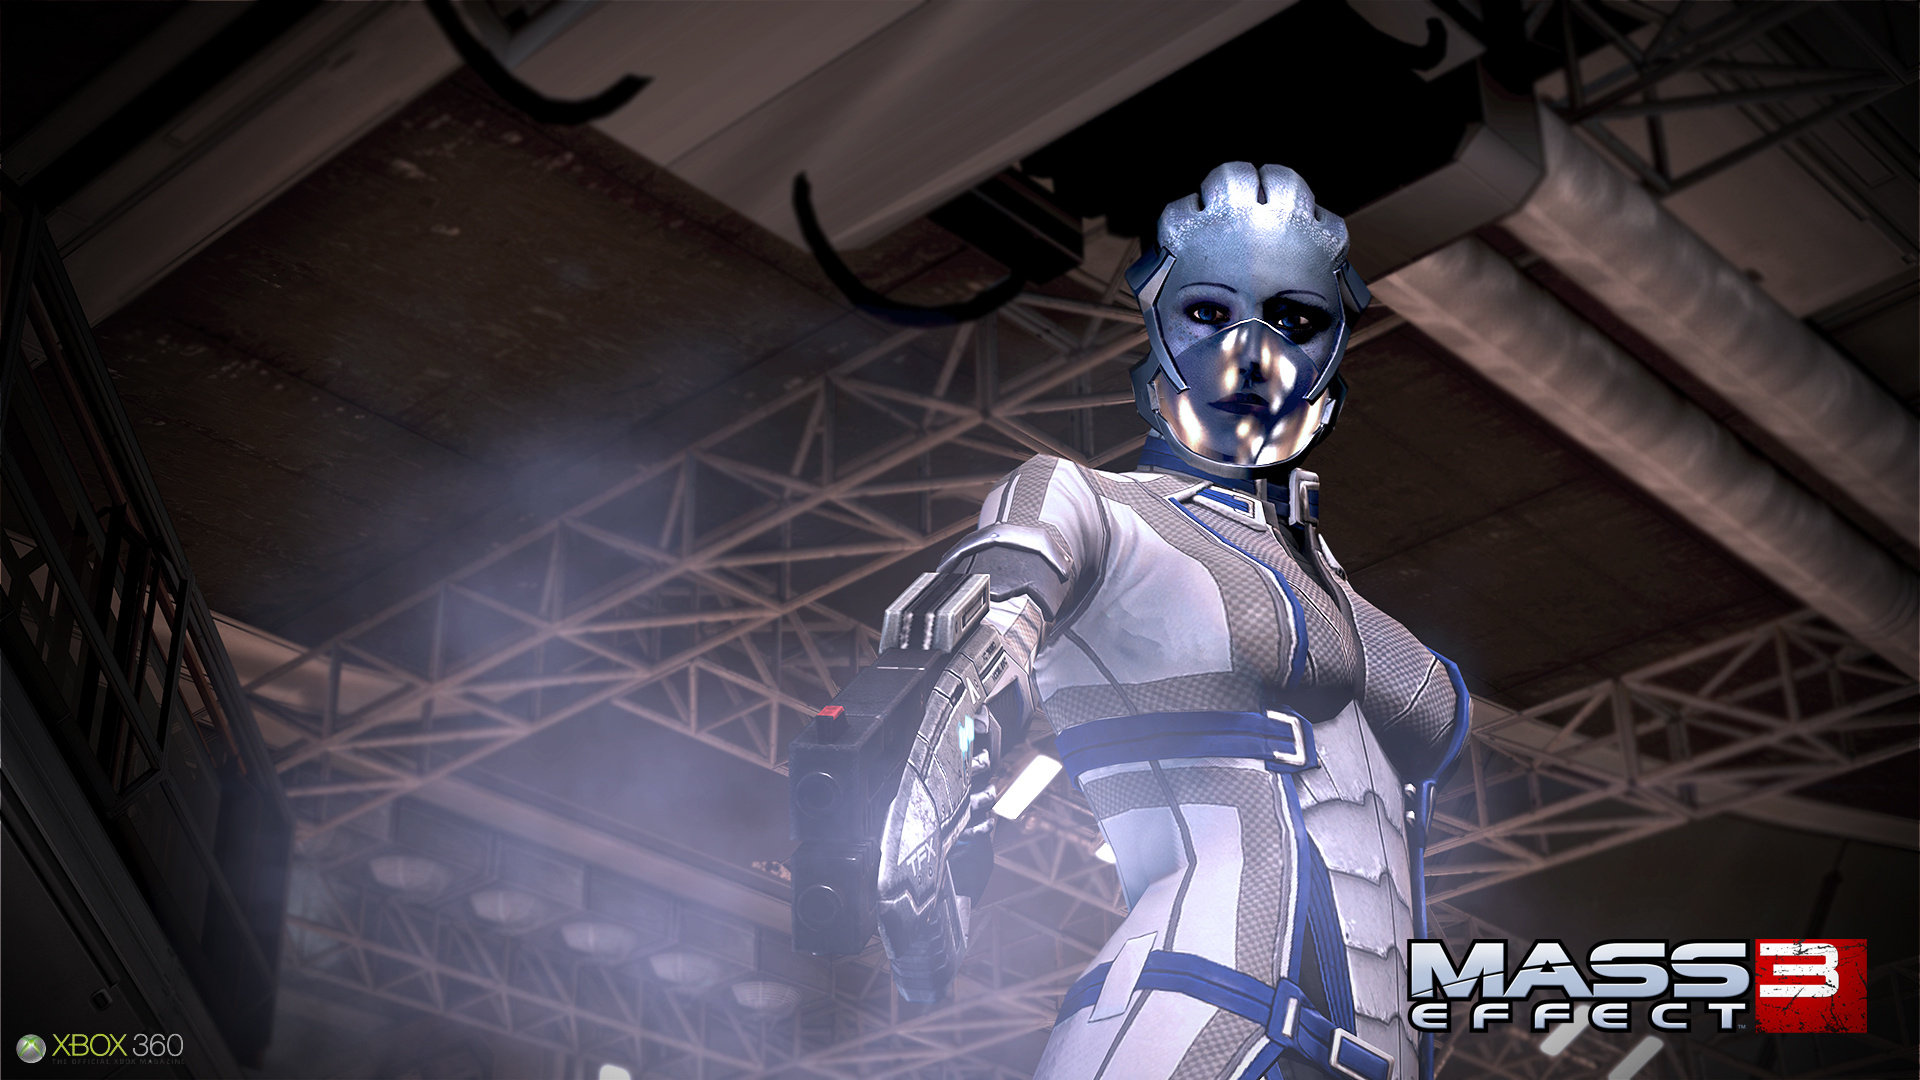 Immagine pubblicata in relazione al seguente contenuto: Mass Effect 3  in arrivo e BioWare parla di Mass Effect 4 | Nome immagine: news16590_5.jpg